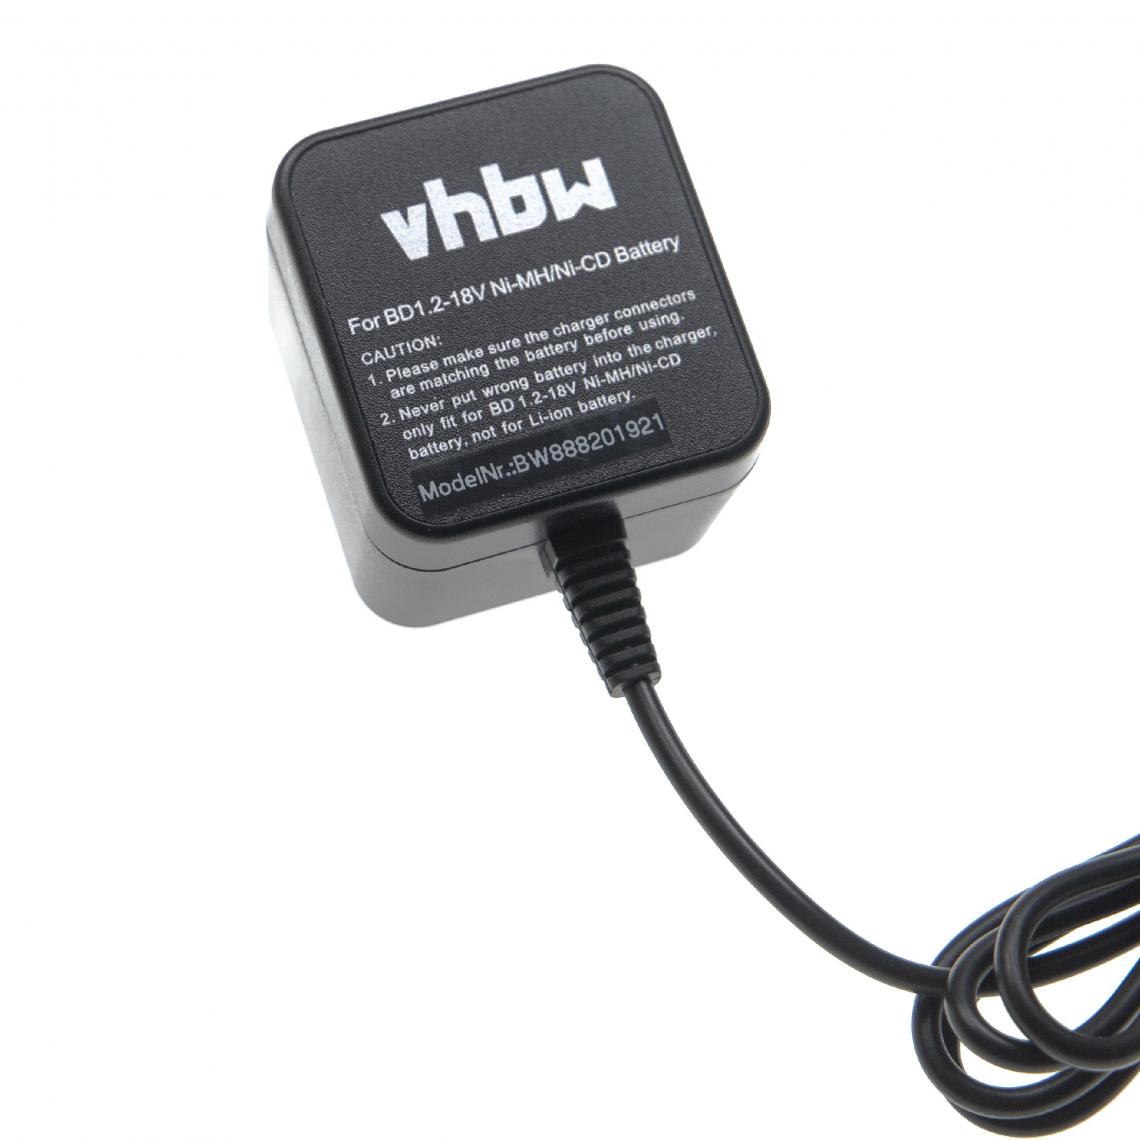 Vhbw - vhbw Chargeur compatible avec Black & Decker Versapak VP660, VP720, VP7221, VP7240, VP7251, VP7251C, VP730 batteries Ni-Cd, NiMH d'outils - Accessoires vissage, perçage